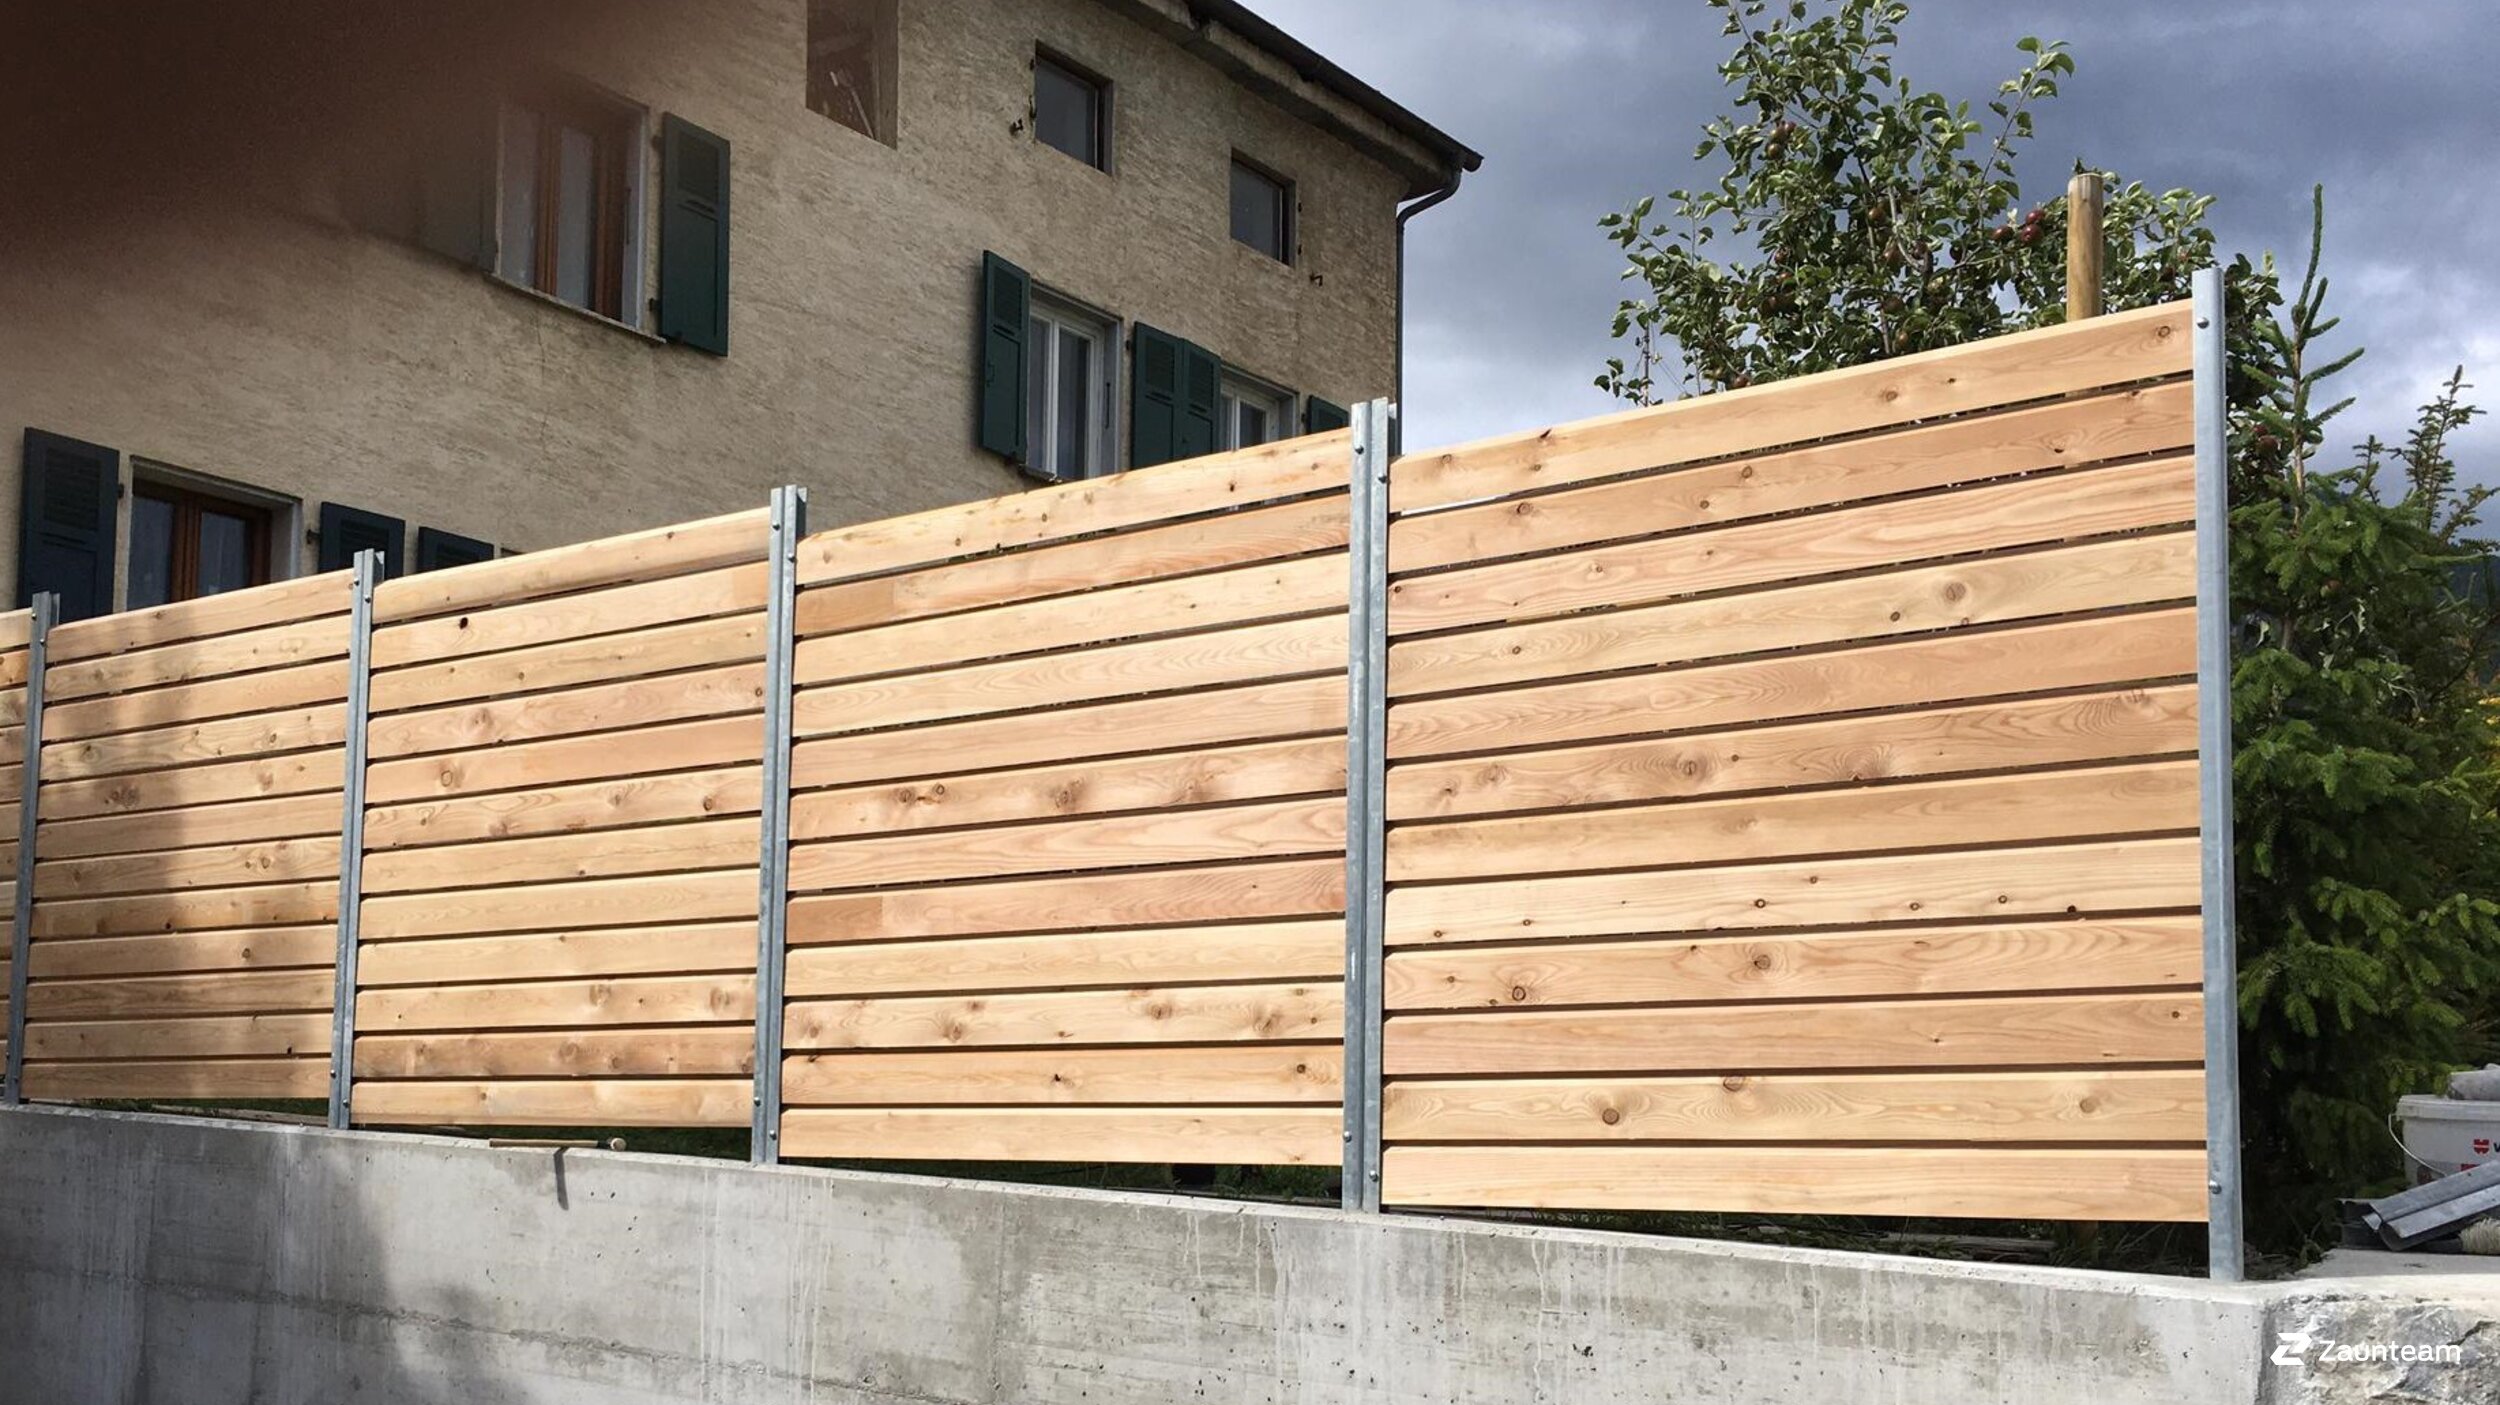 Protection brise-vue en bois de 2021 à 1964 Conthey Suisse de Zaunteam Wallis / Swissclôture Valais.